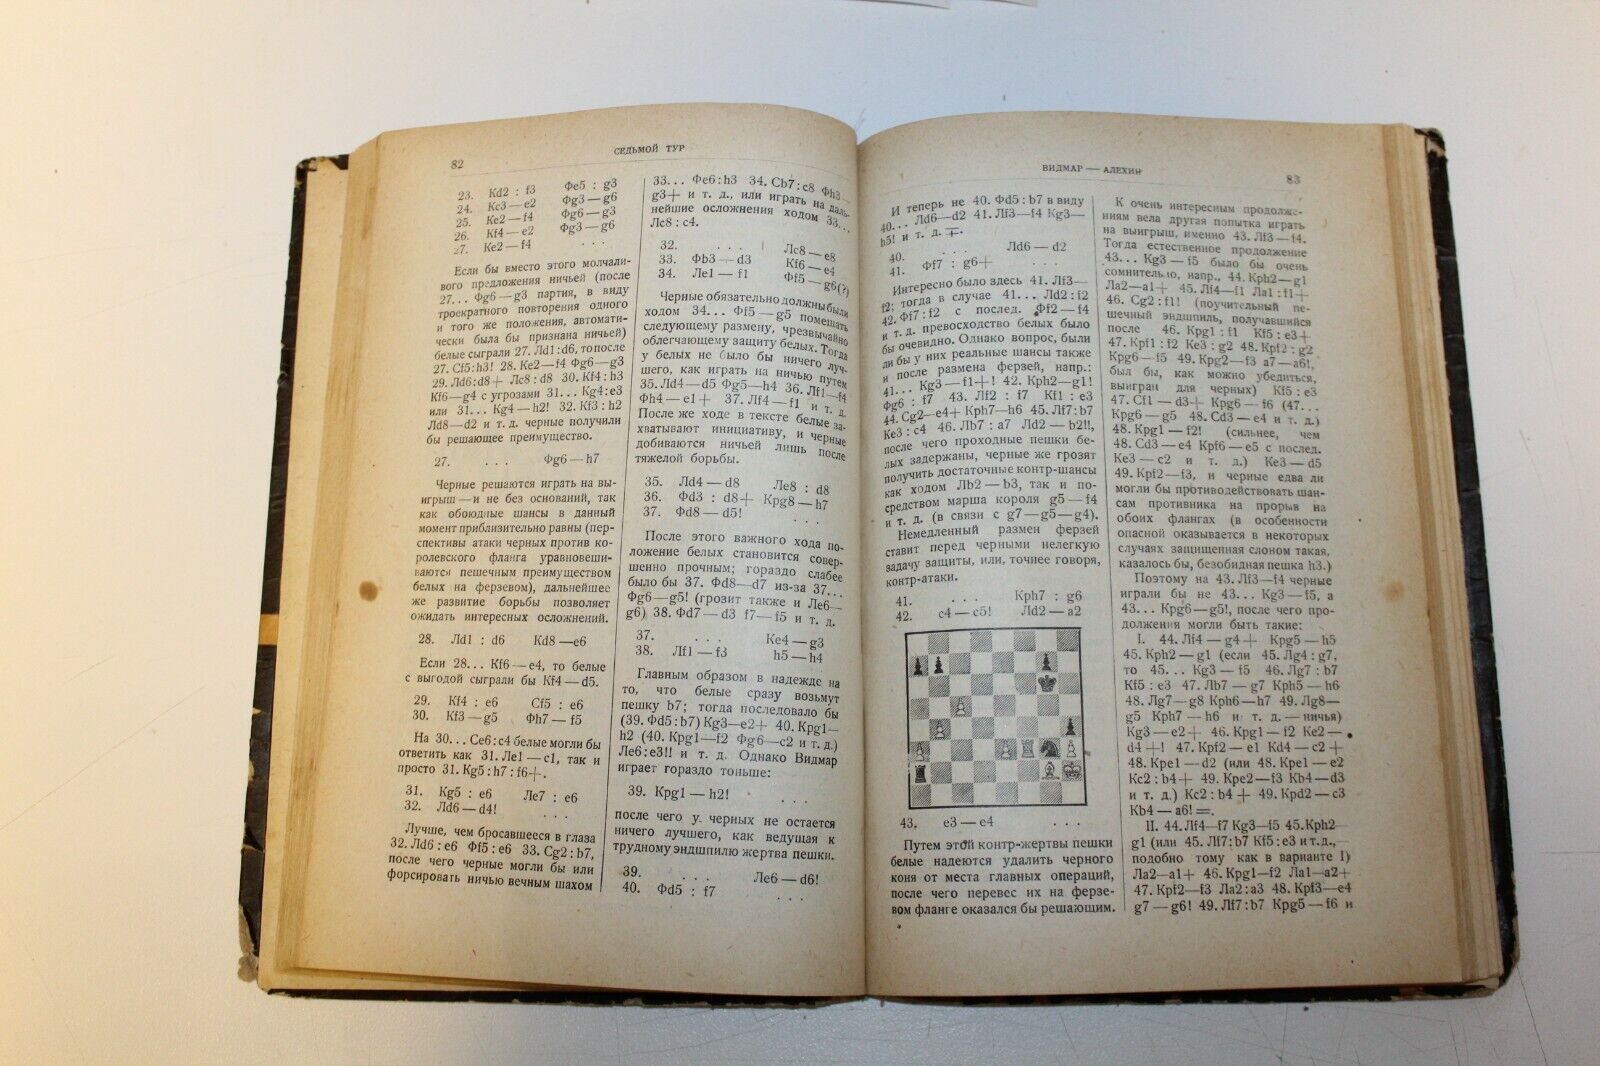 11500.Russian Chess Book: Alekhine. International chess tournament New-York 1927.1930